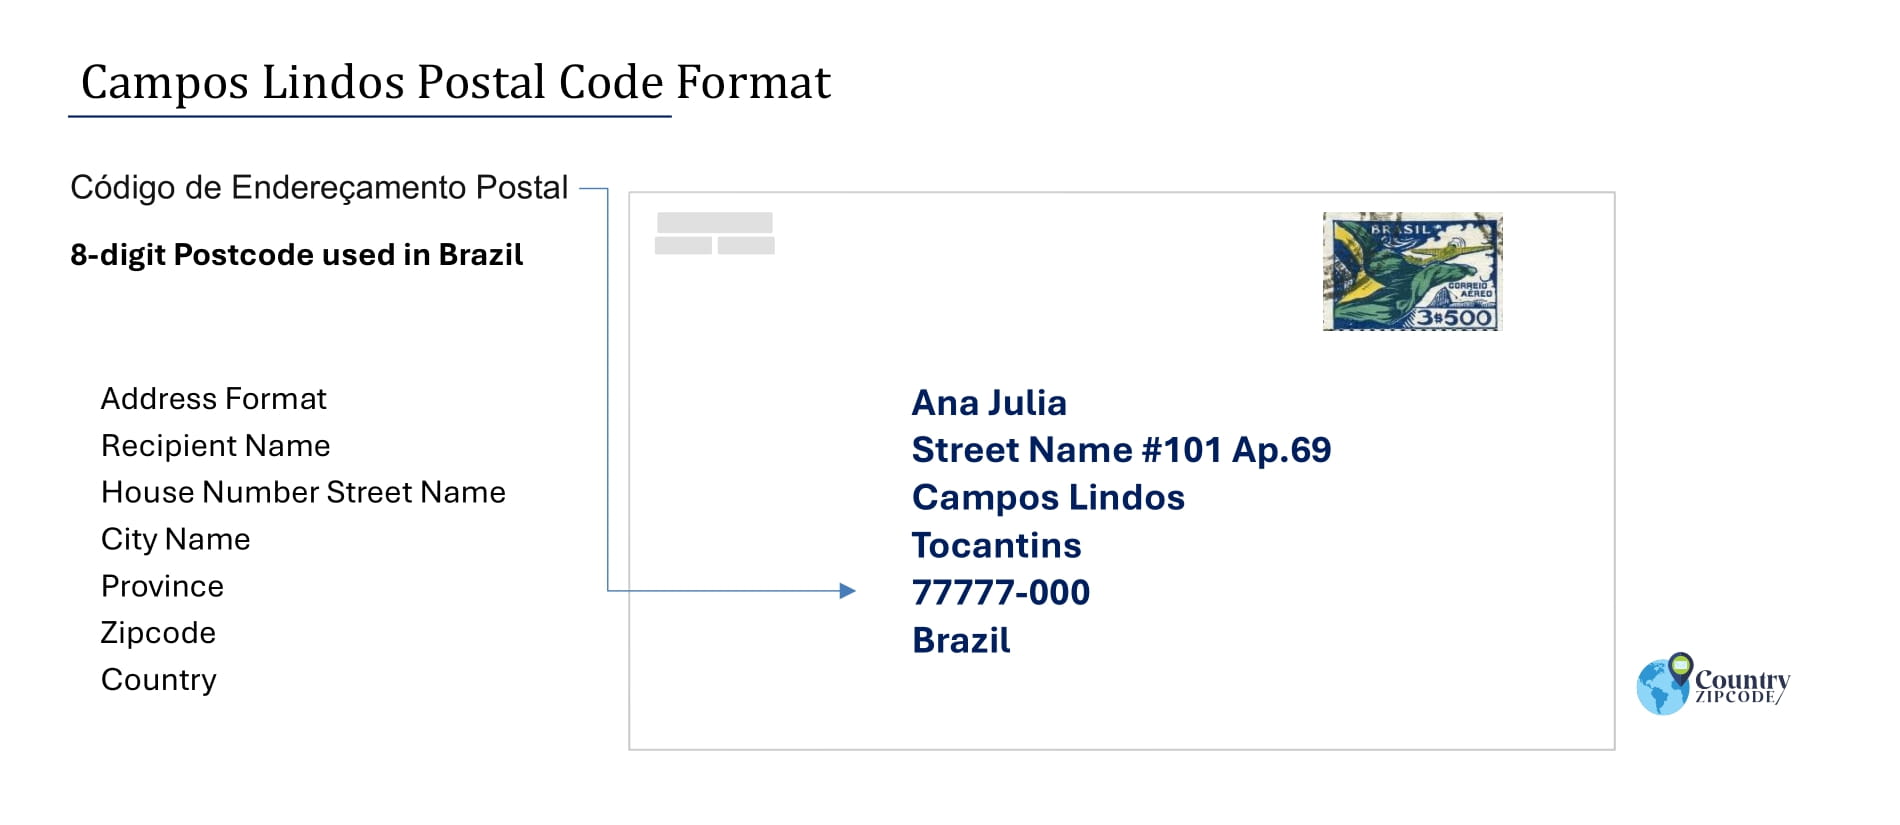 Example of Codigo de Enderecamento Postal and Address format of Campos Lindos Brazil